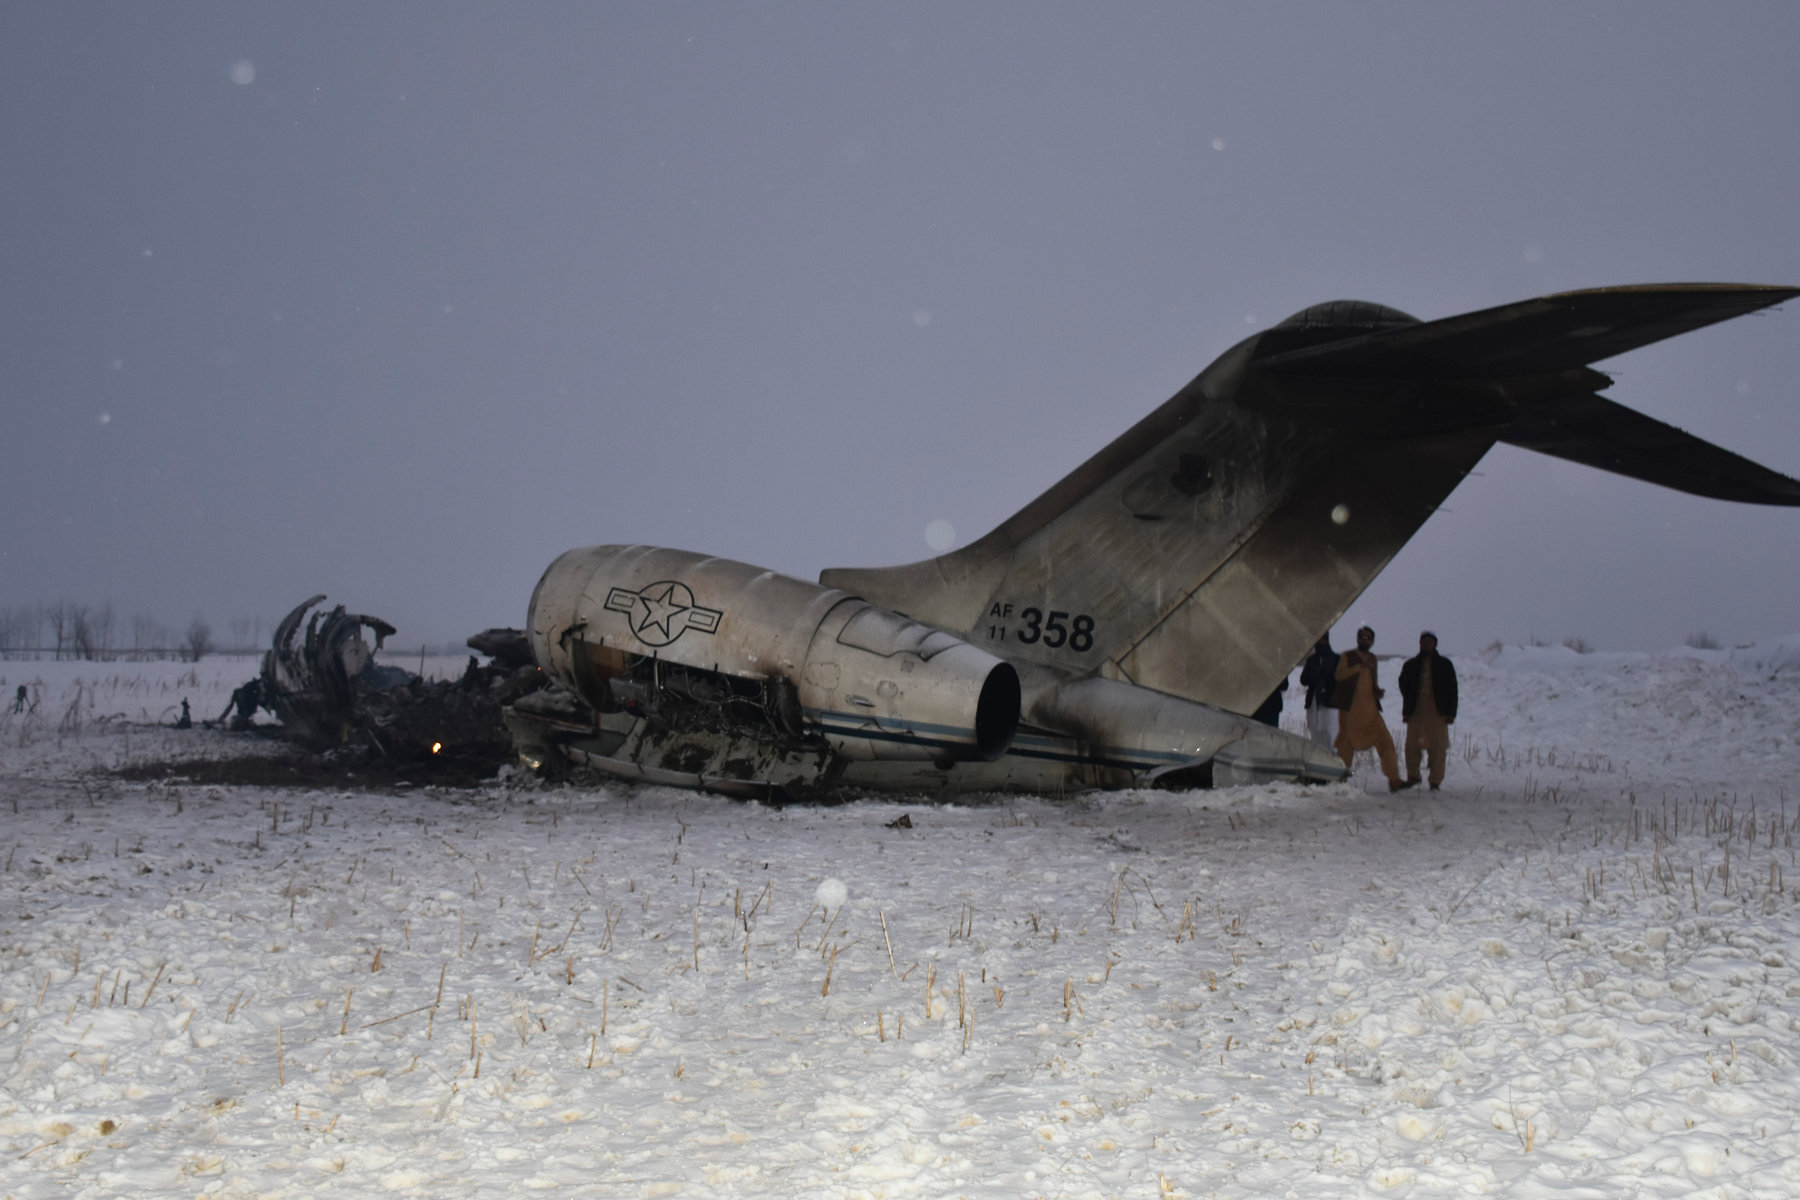 Αμερικανικές δυνάμεις ανέσυραν τις σορούς από το αεροσκάφος που συνετρίβη στο Αφγανιστάν